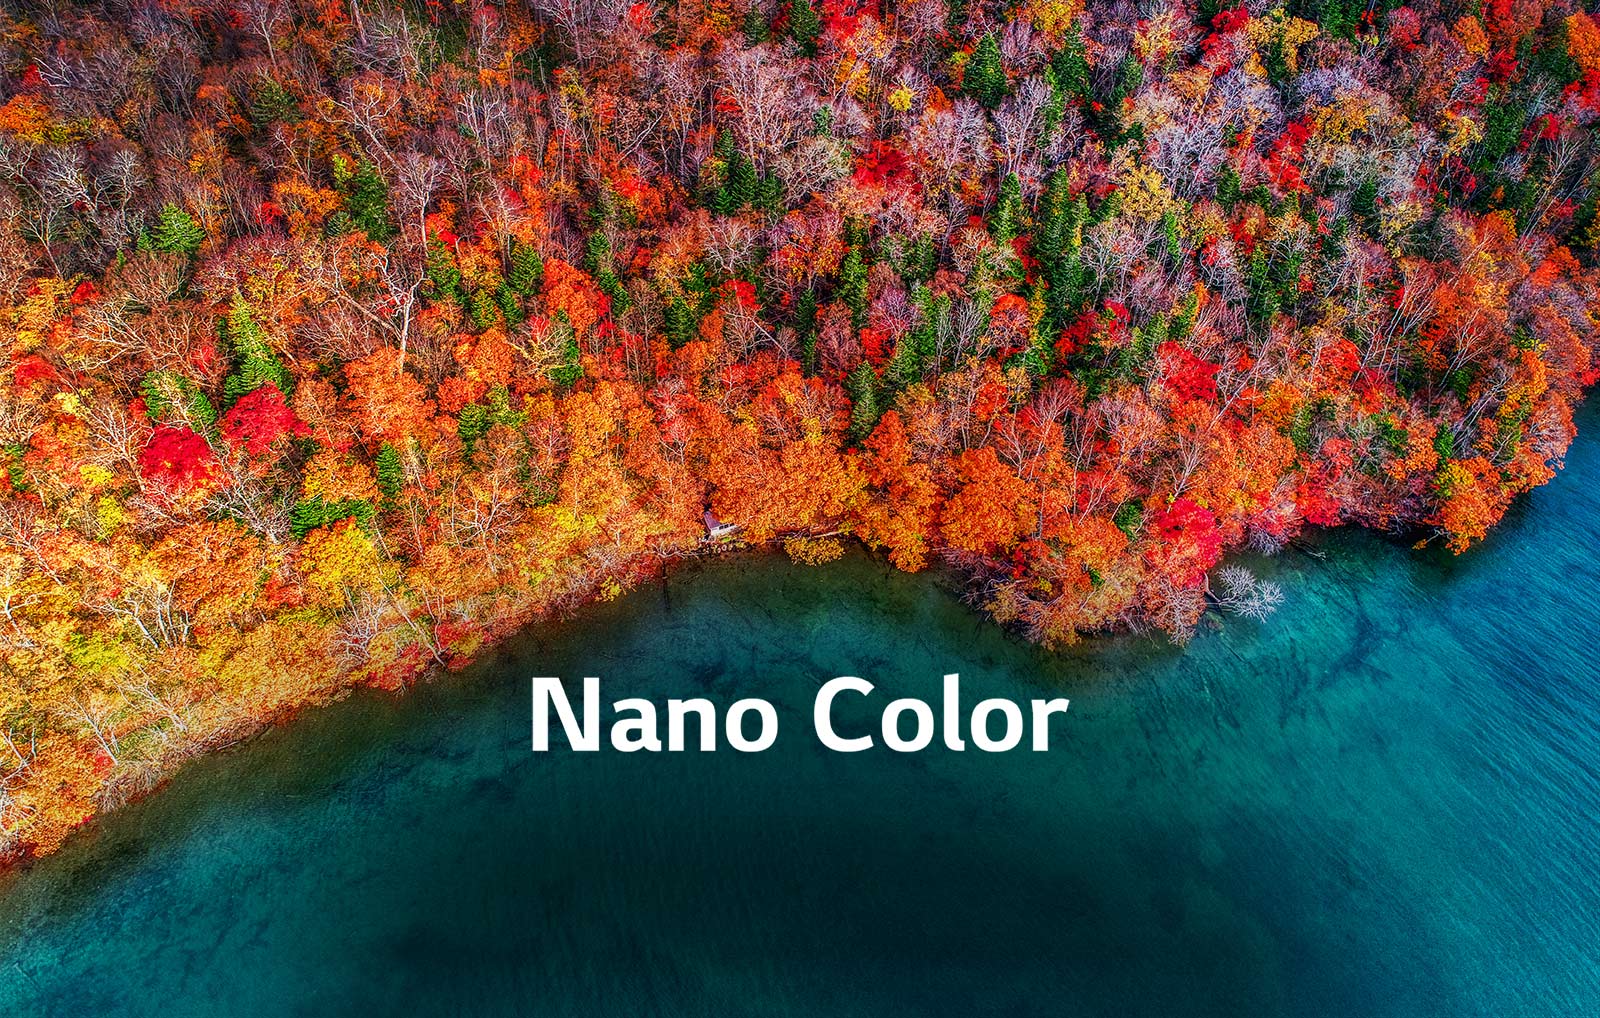 D02_TV-NanoCell-SM98-02-Nano-Color-Desktop_v1